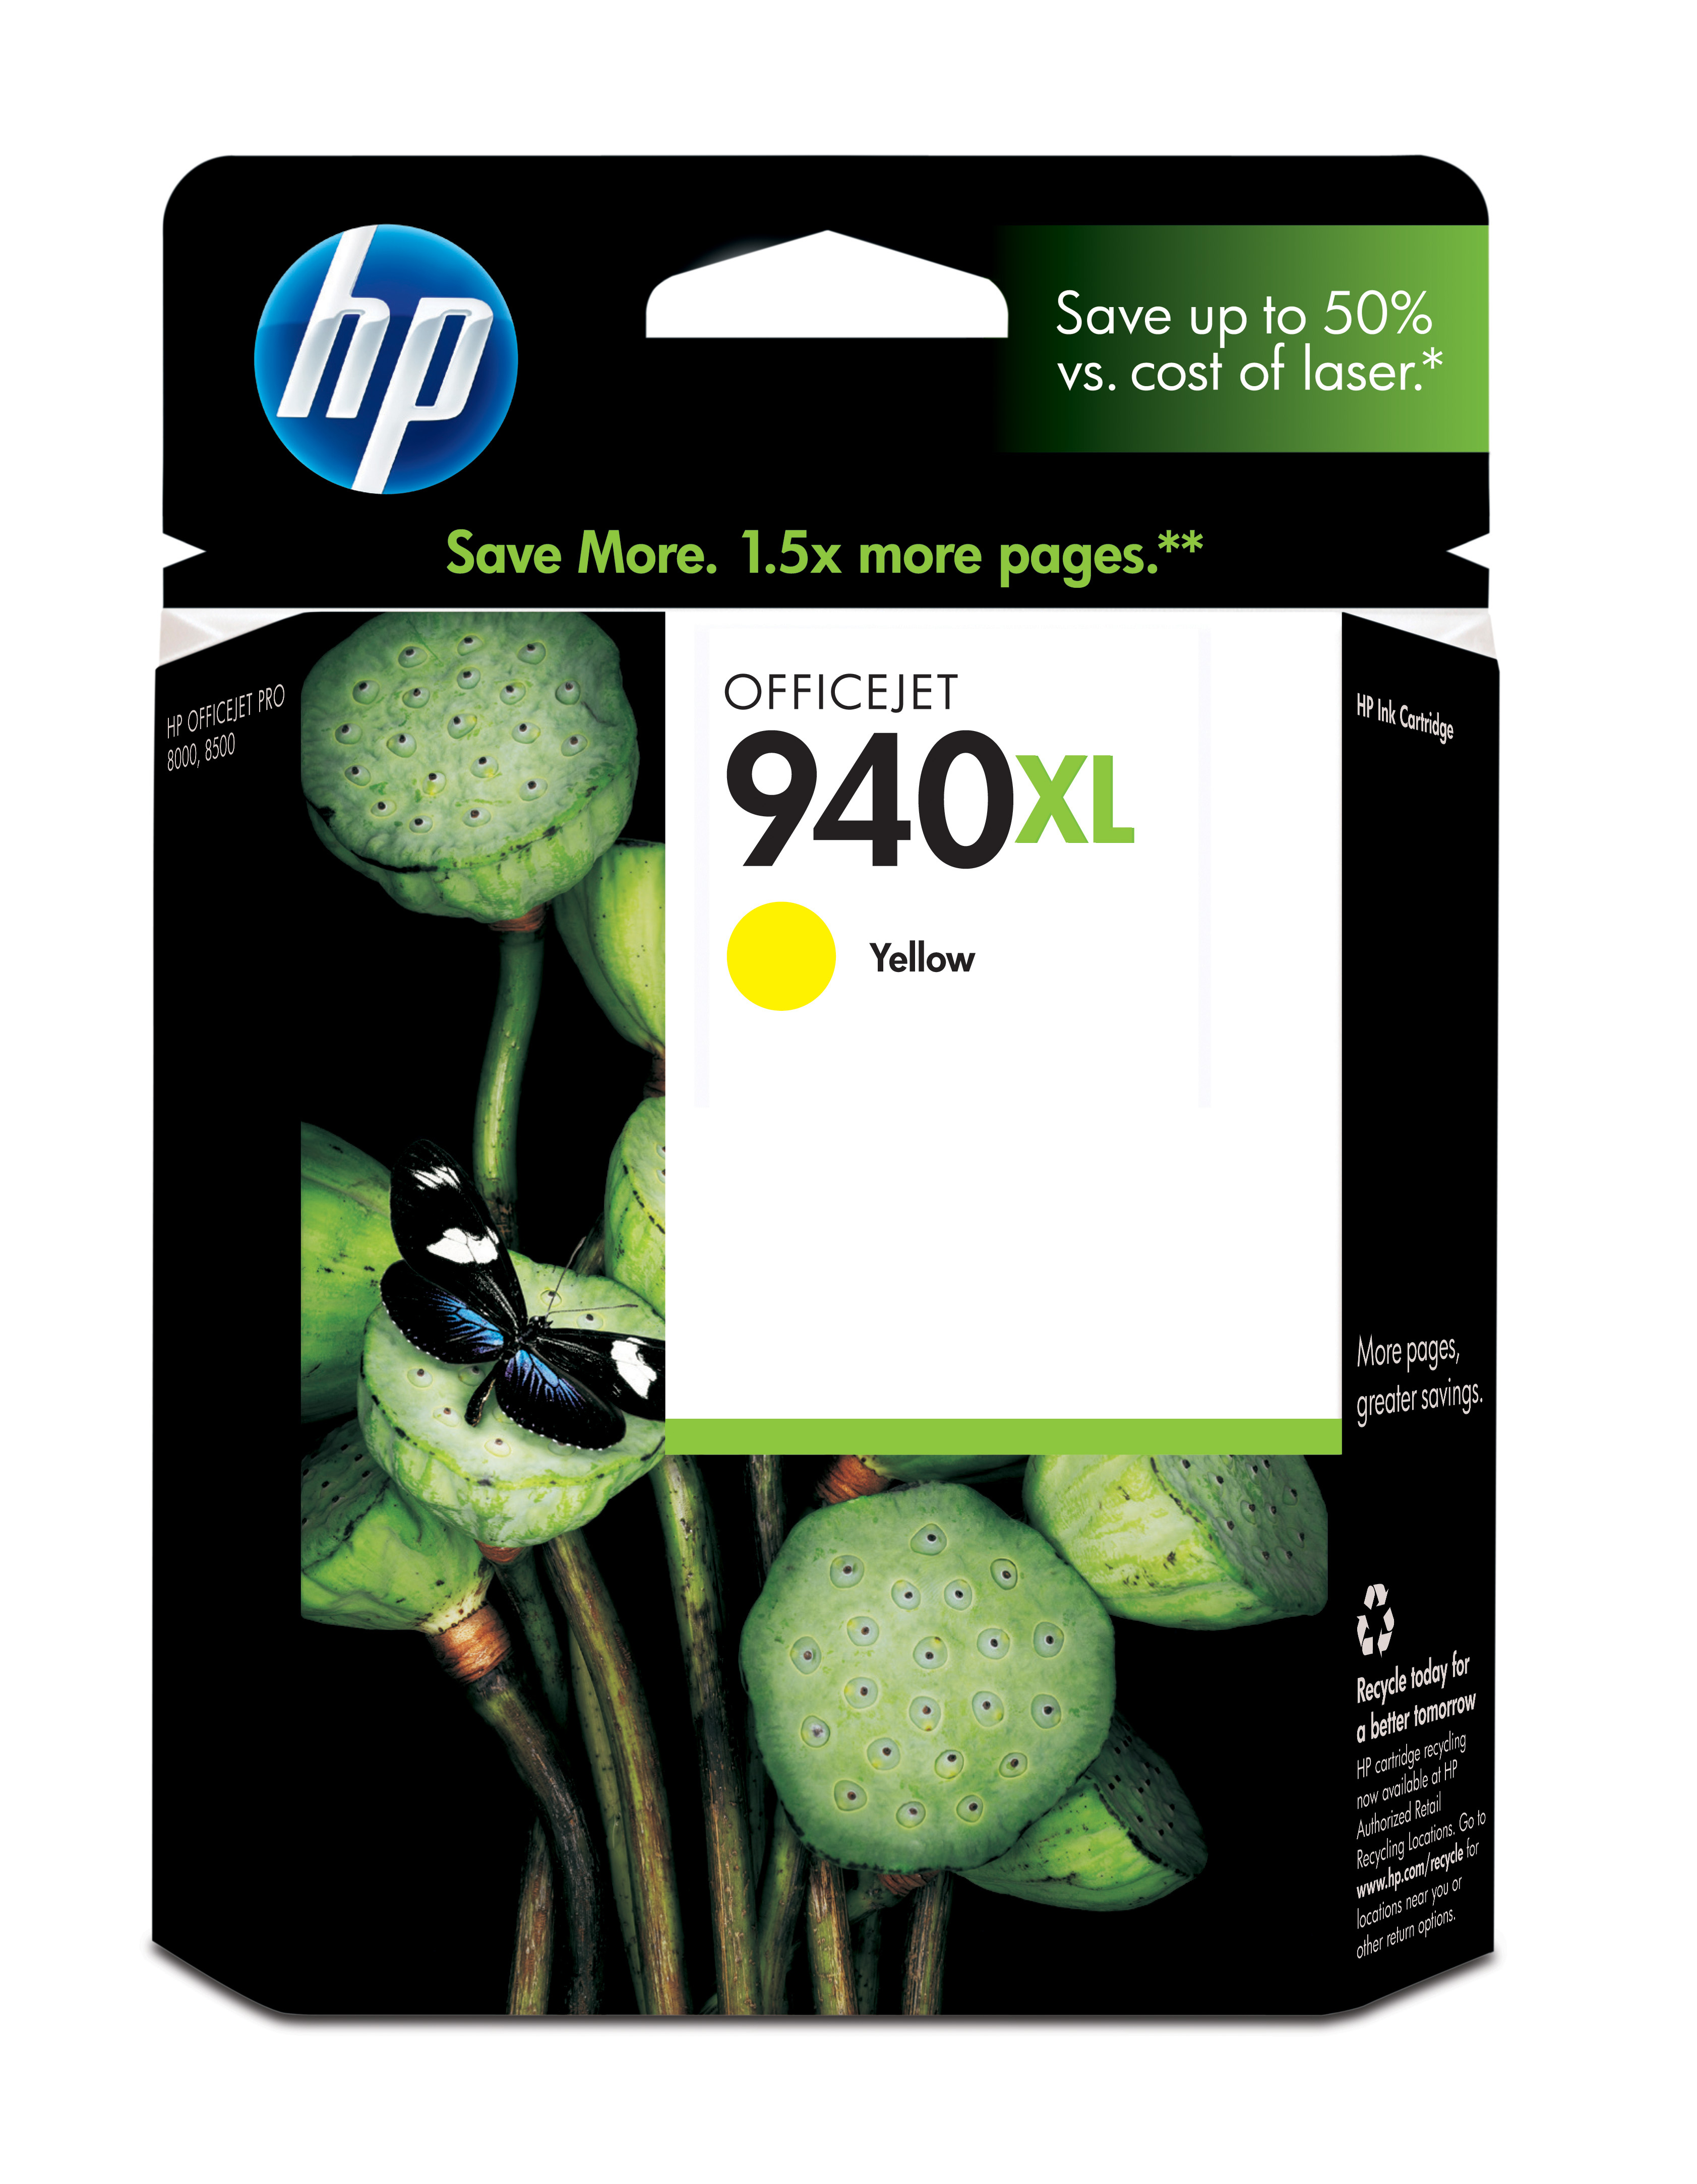 HP 940XL Yellow Officejet Ink Cartridge Genuine HP Inkjet